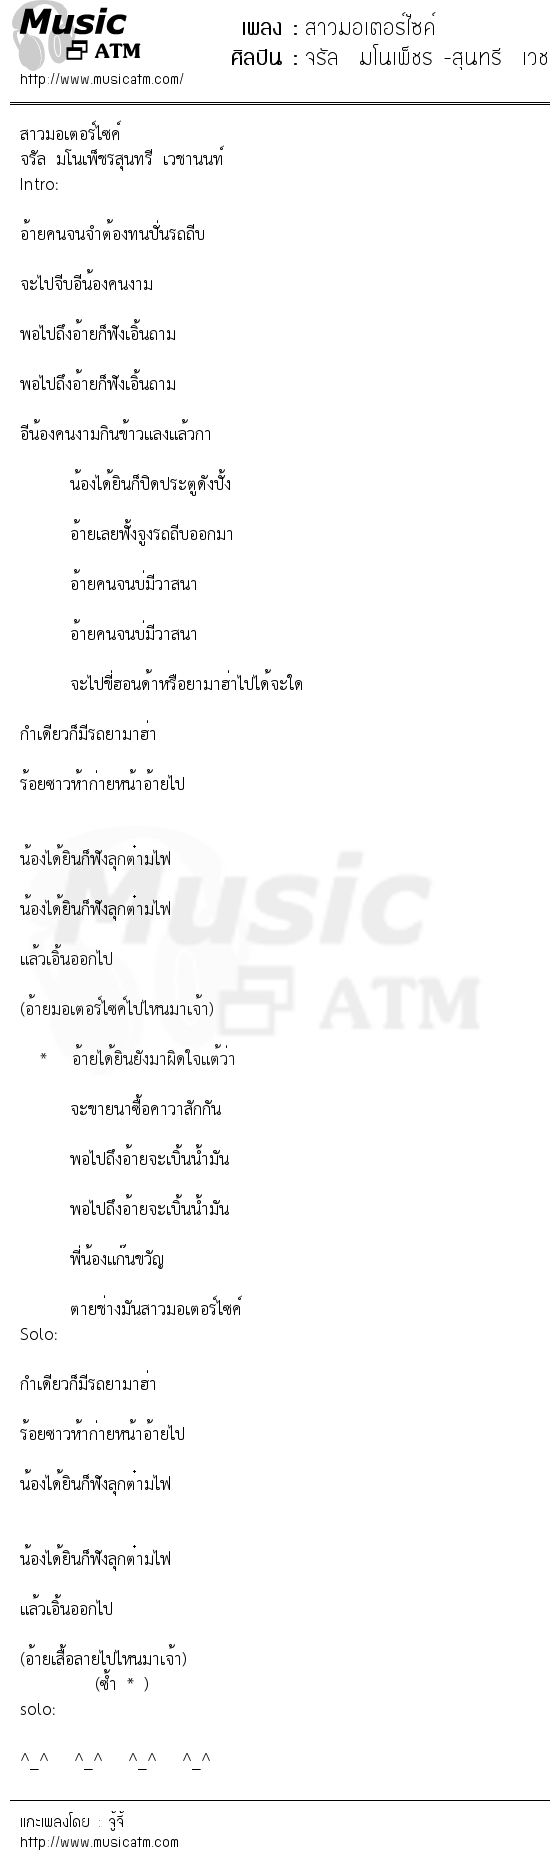 เนื้อเพลง สาวมอเตอร์ไซค์ - จรัล มโนเพ็ชร -สุนทรี เวชานนท์ | เพลงไทย